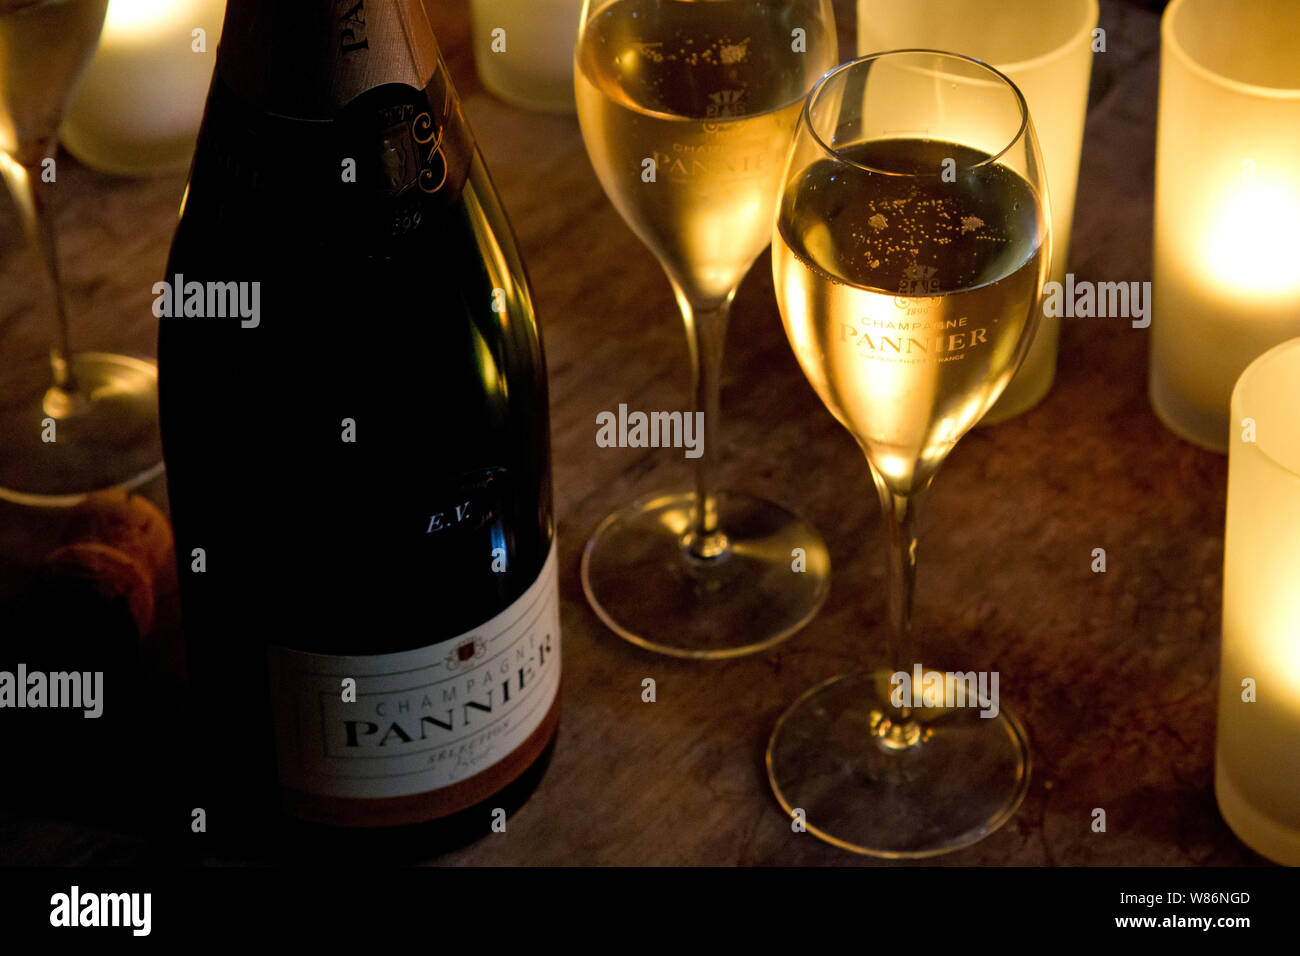 Verre de champagne Pannier à Château-Thierry (nord de la France) Banque D'Images